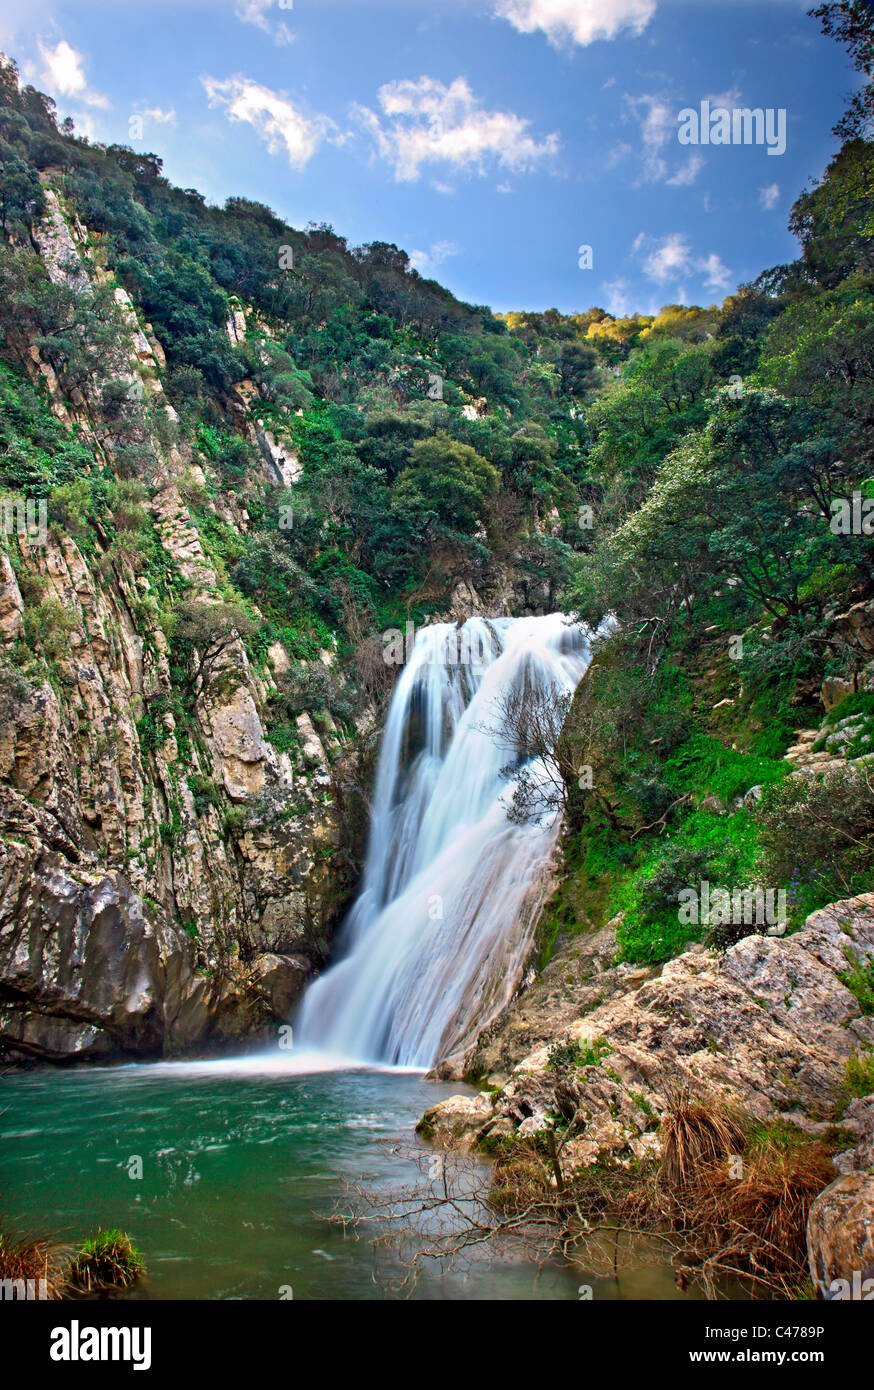 Einer der vielen Wasserfälle bei Polylimnio, ein Ort von außergewöhnlicher natürlicher Schönheit in Präfektur Messinia, Peloponnes, Griechenland Stockfoto